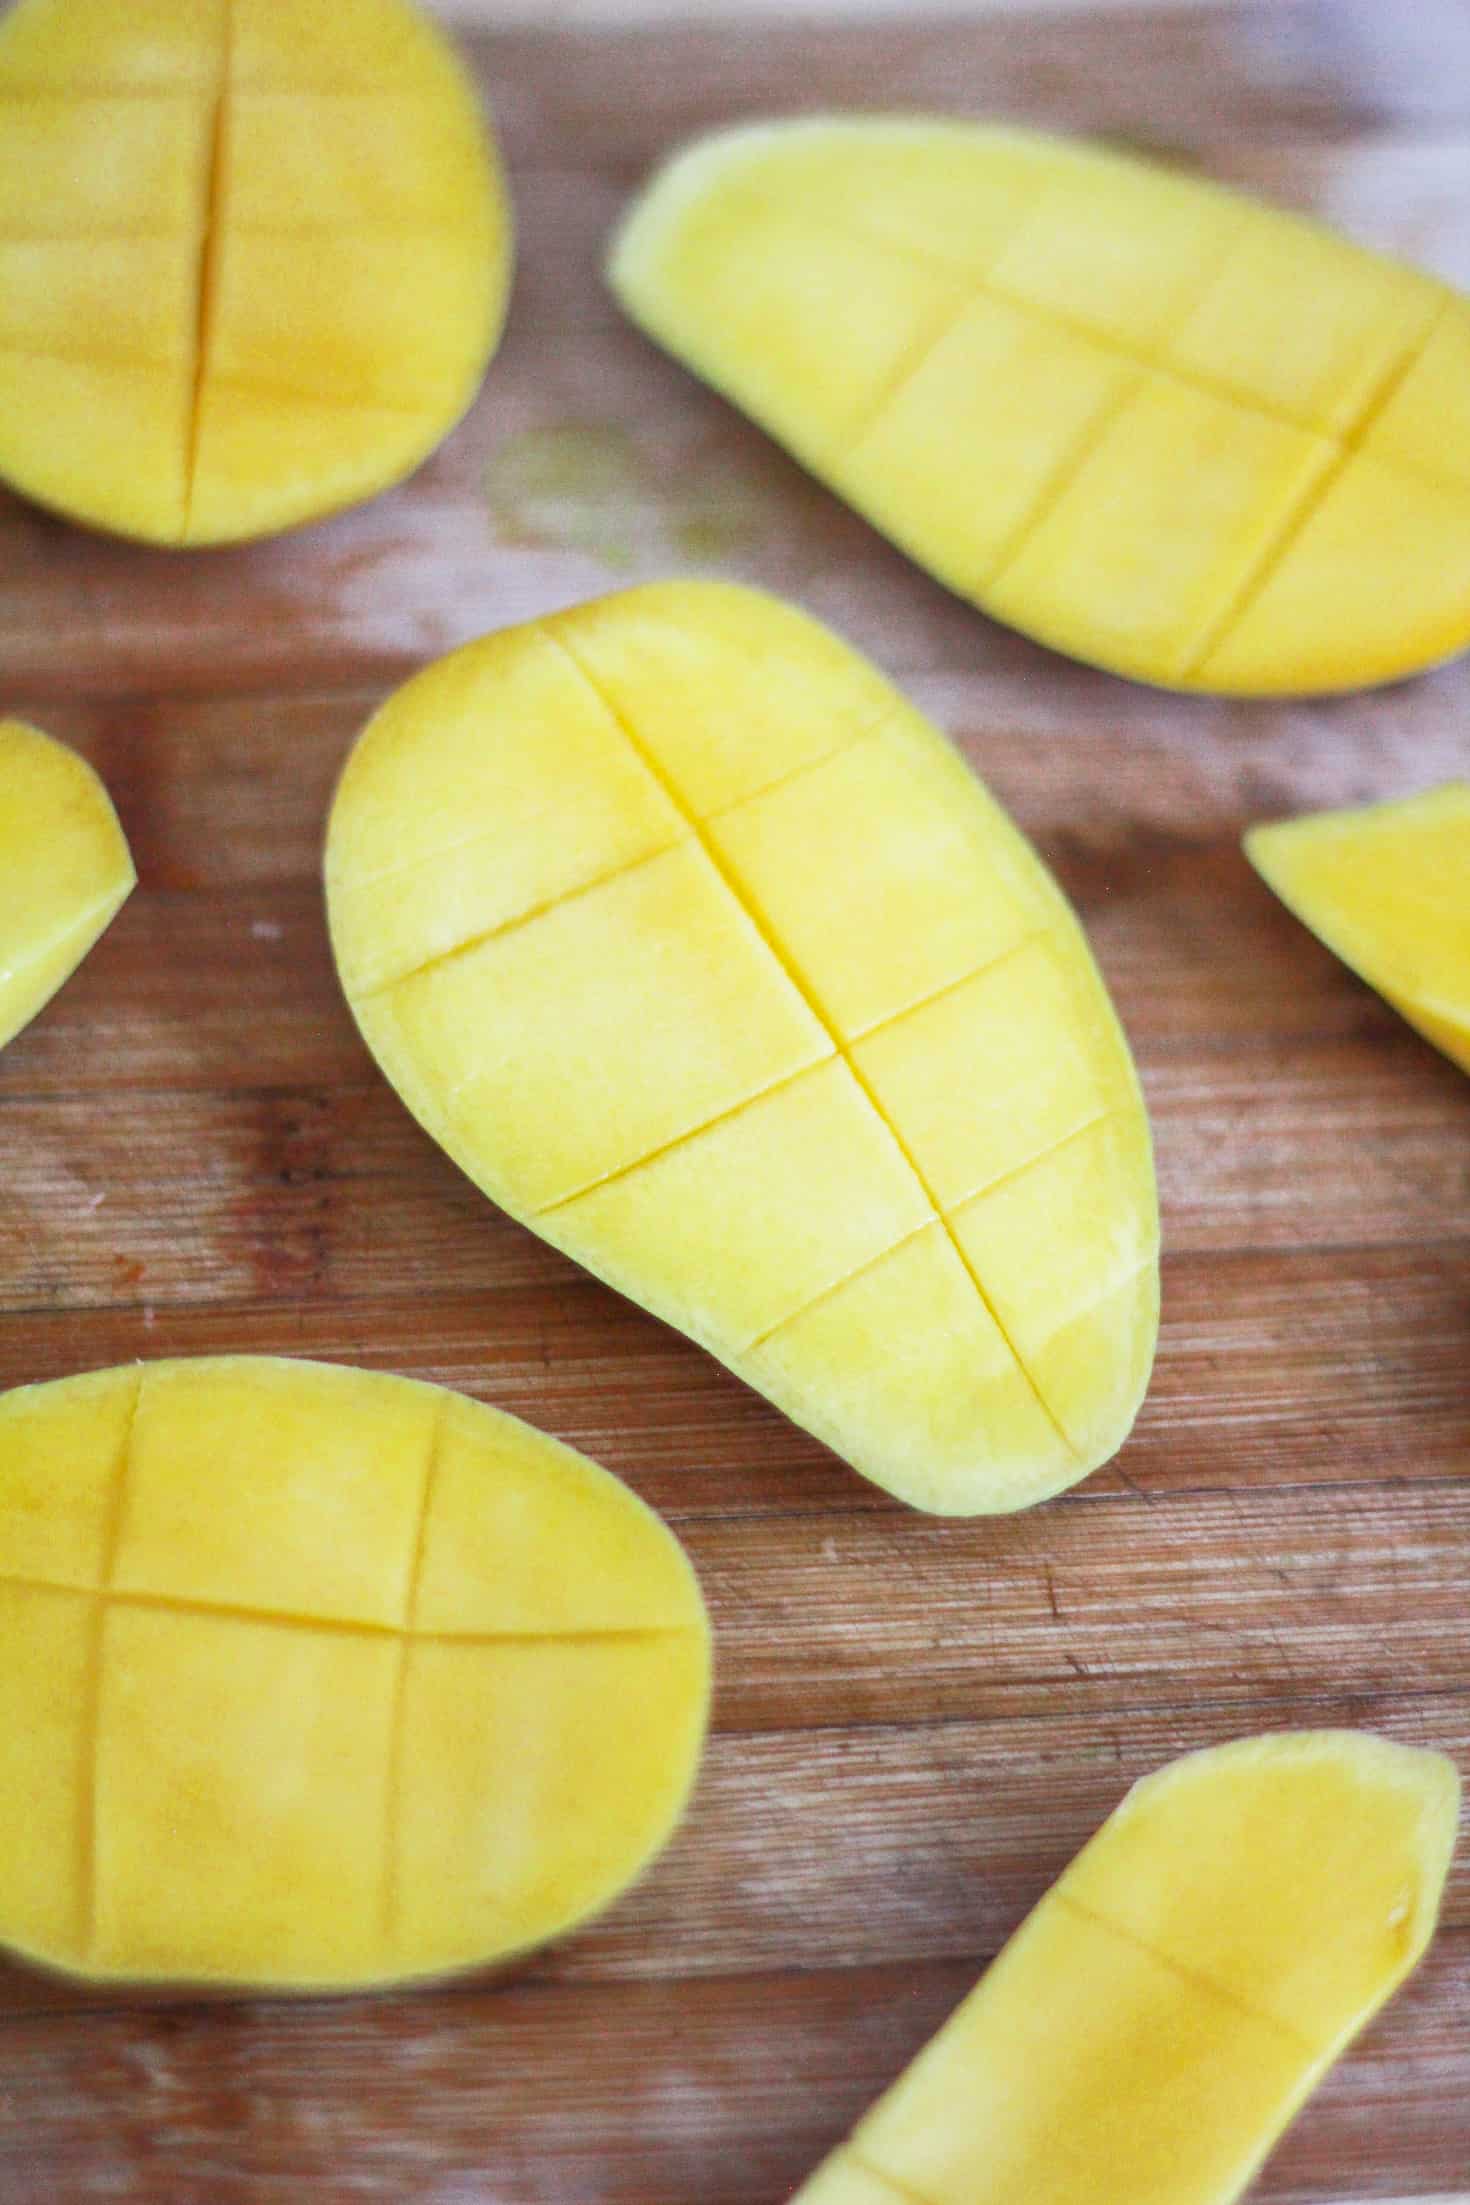 Scored mangoes illustrating how to dice a fresh mango.